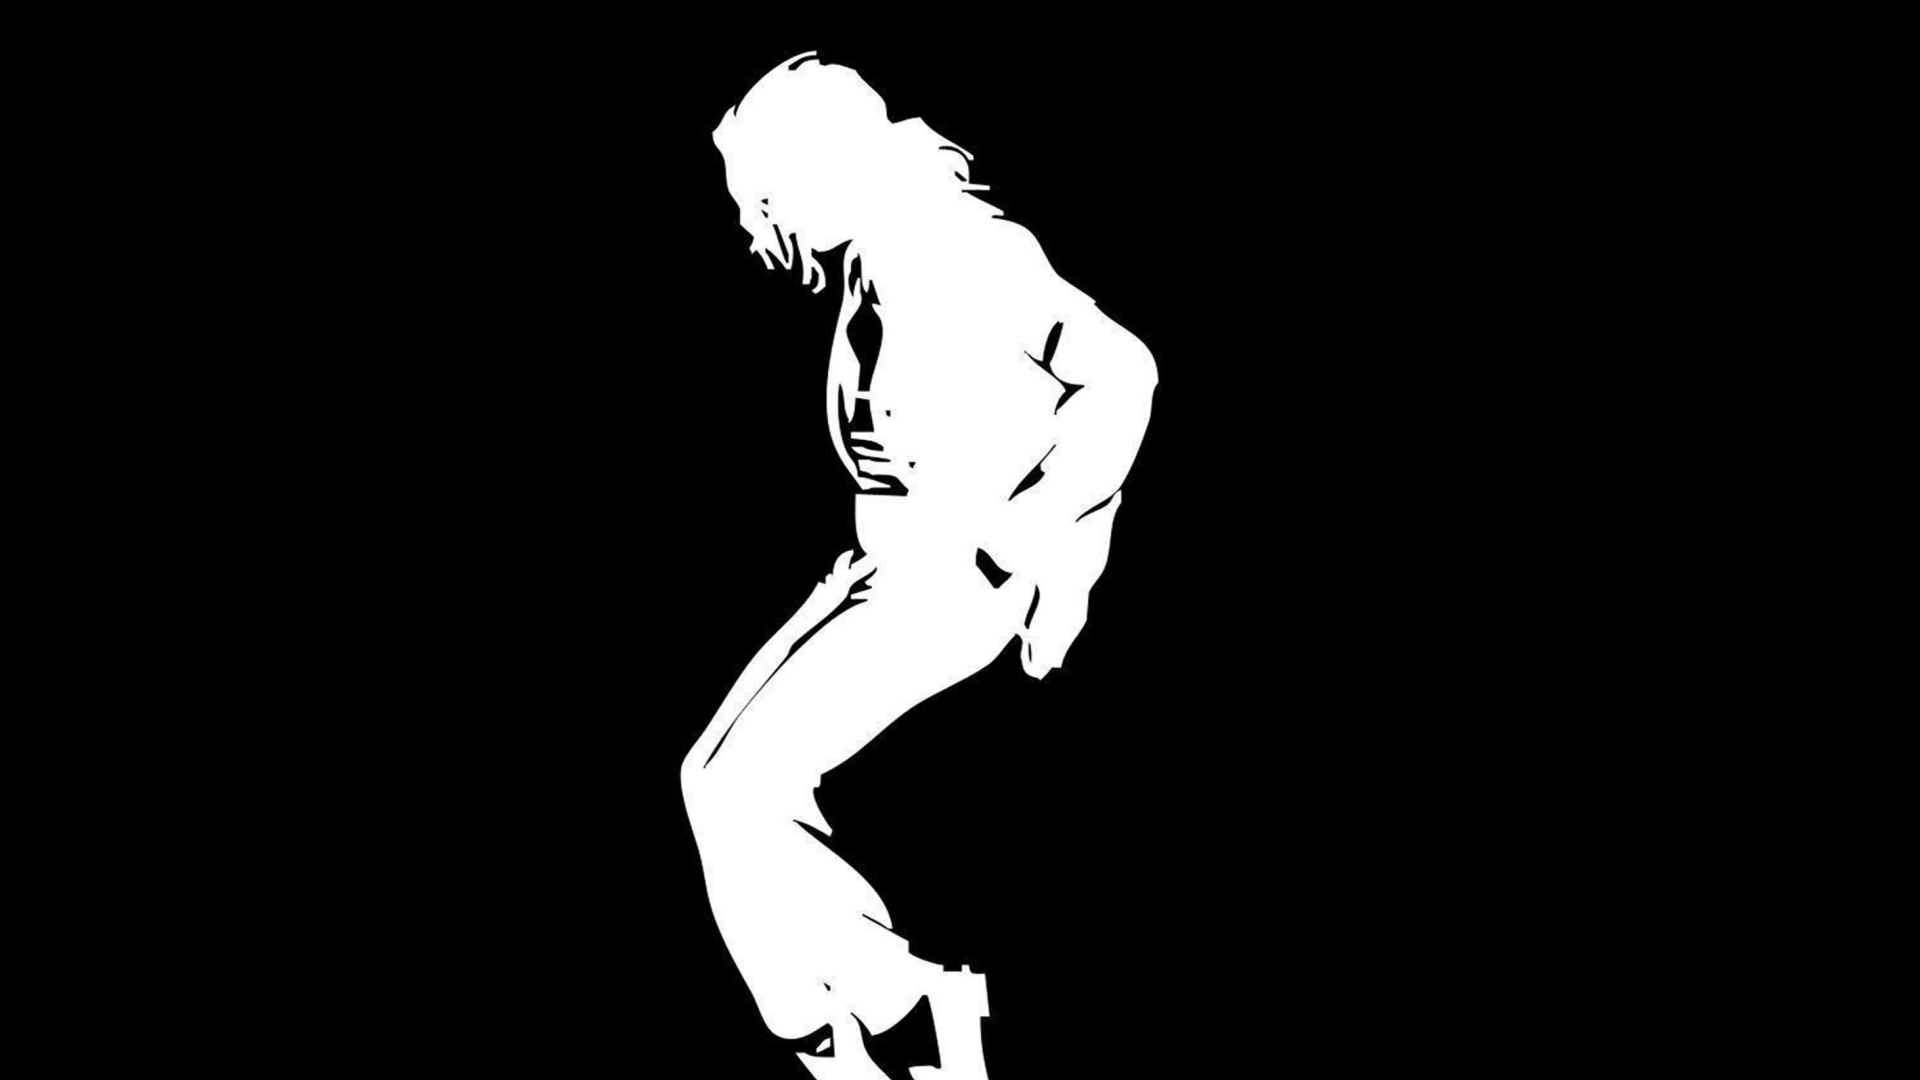 Das Michael Jackson Wallpaper 1920x1080